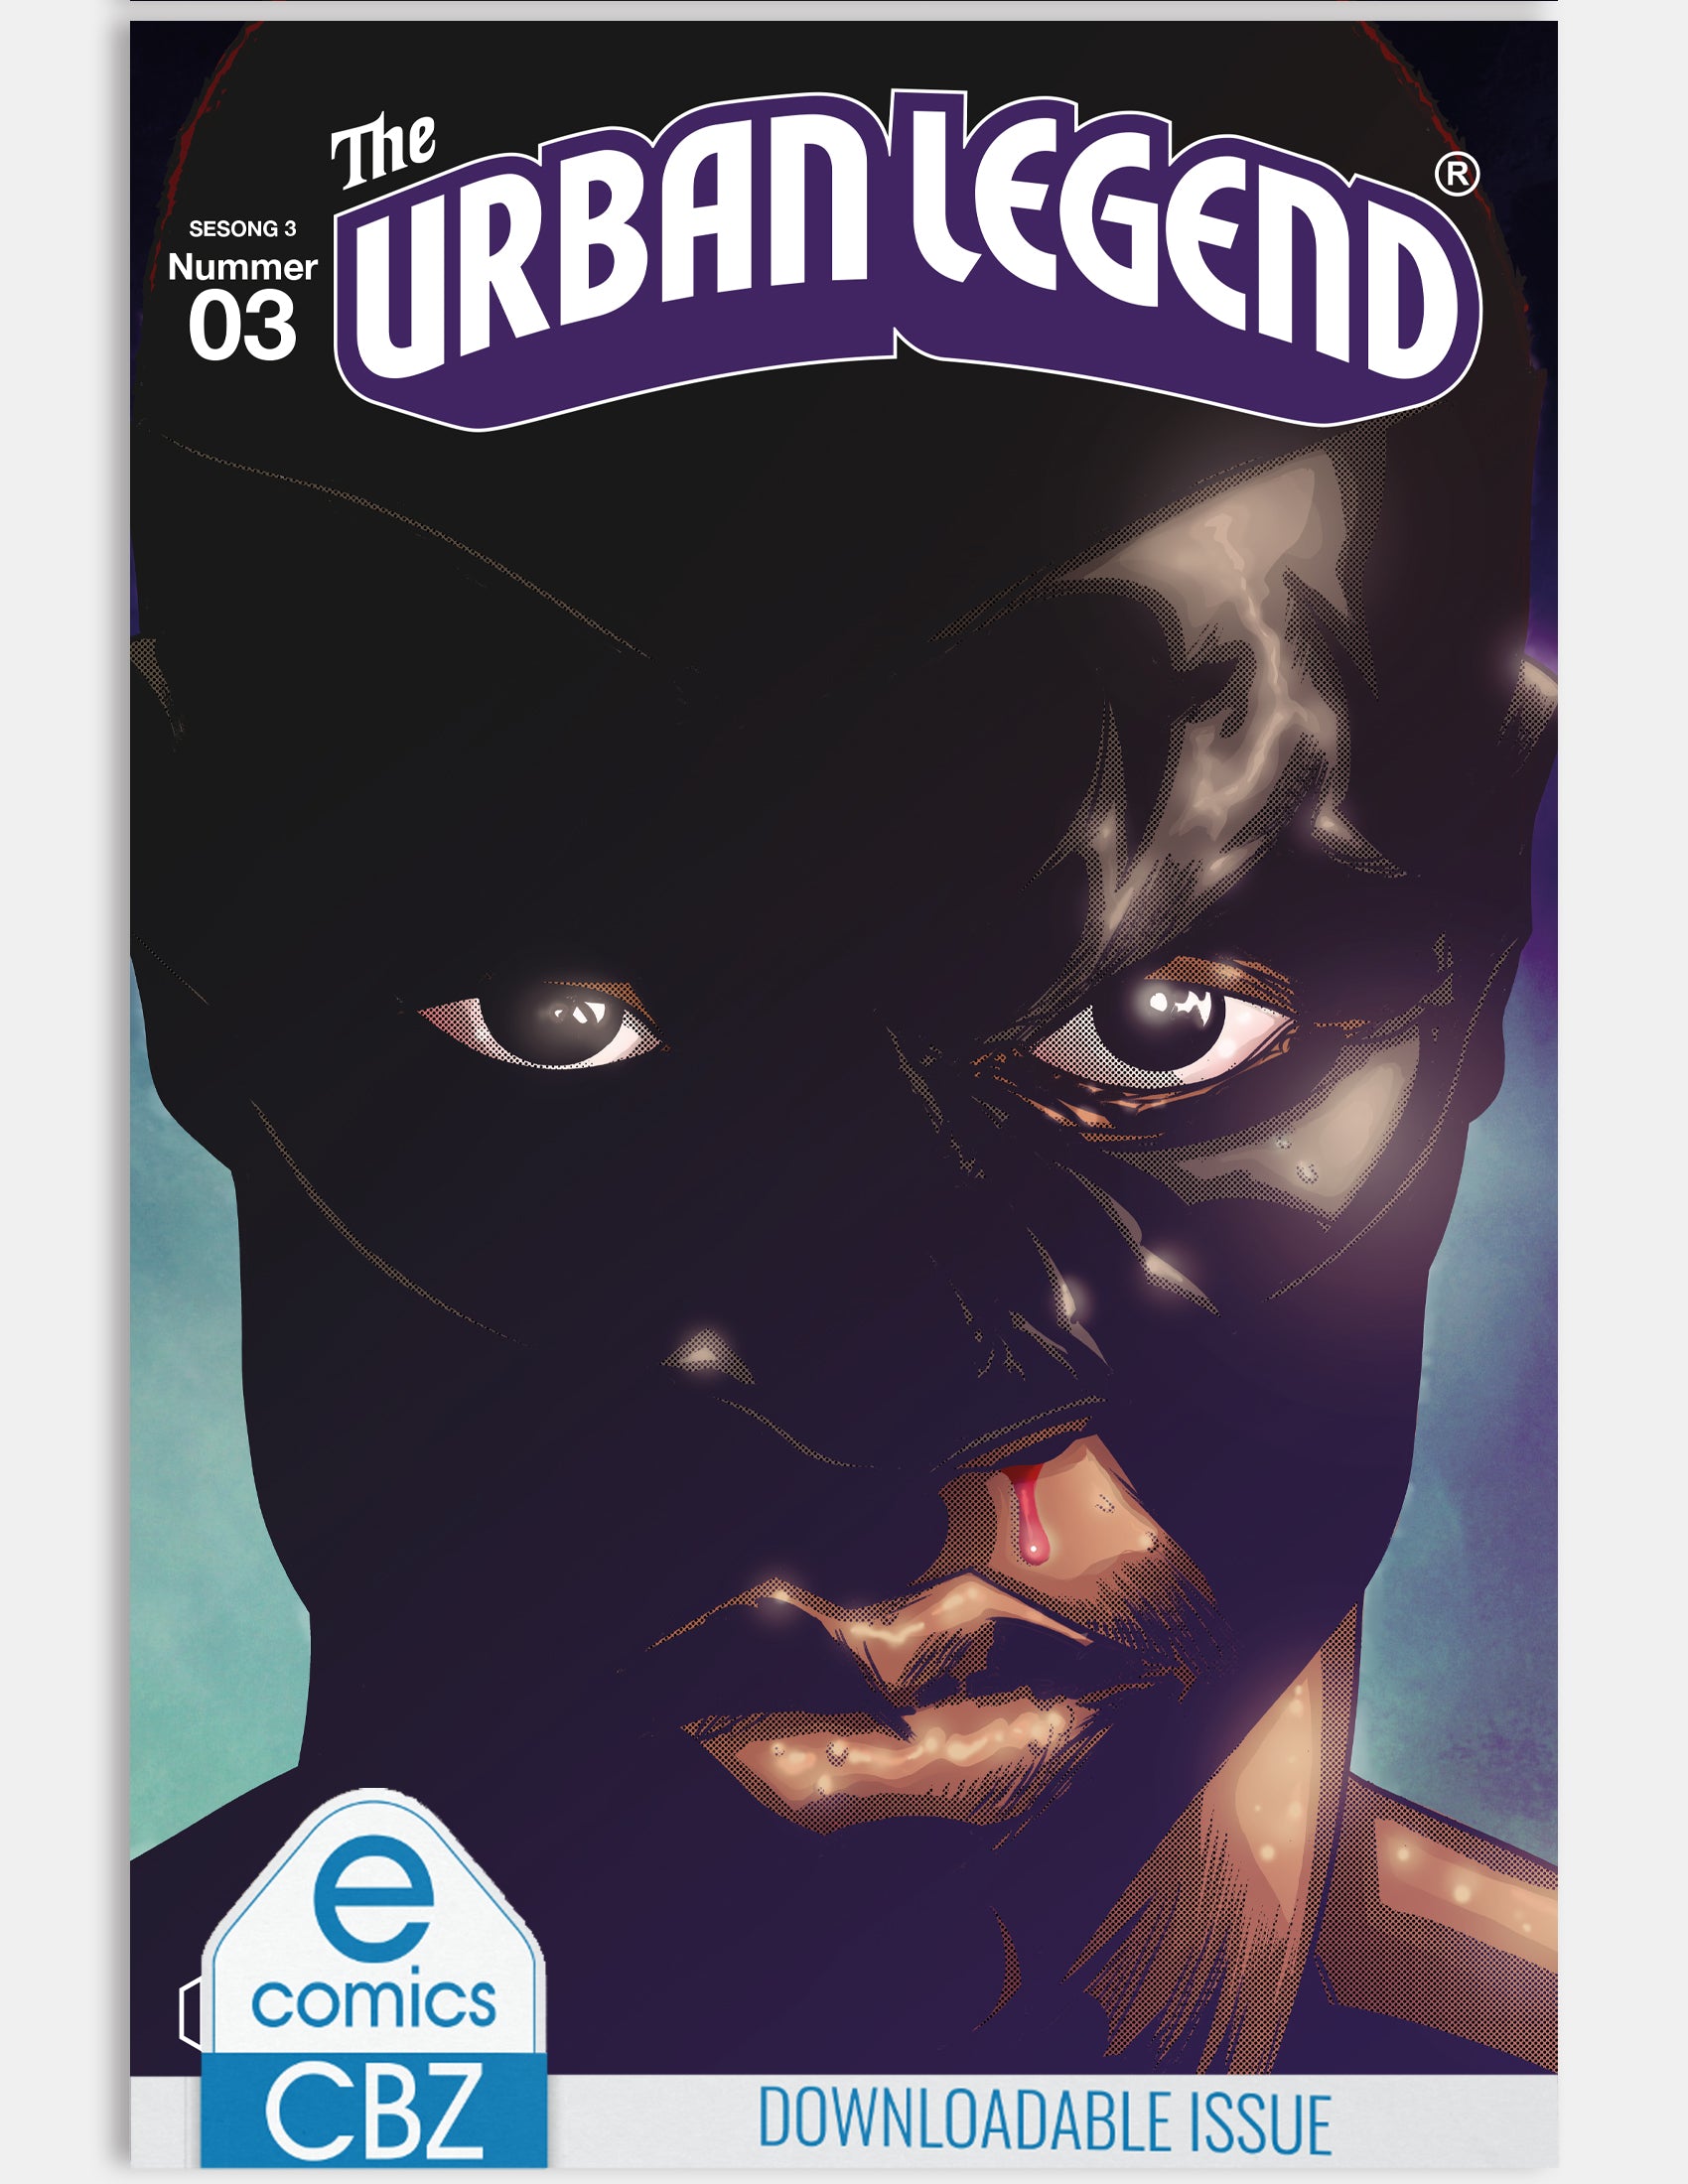 The Urban Legend - Ego (issue 3 - Season 3) - Digital Issue